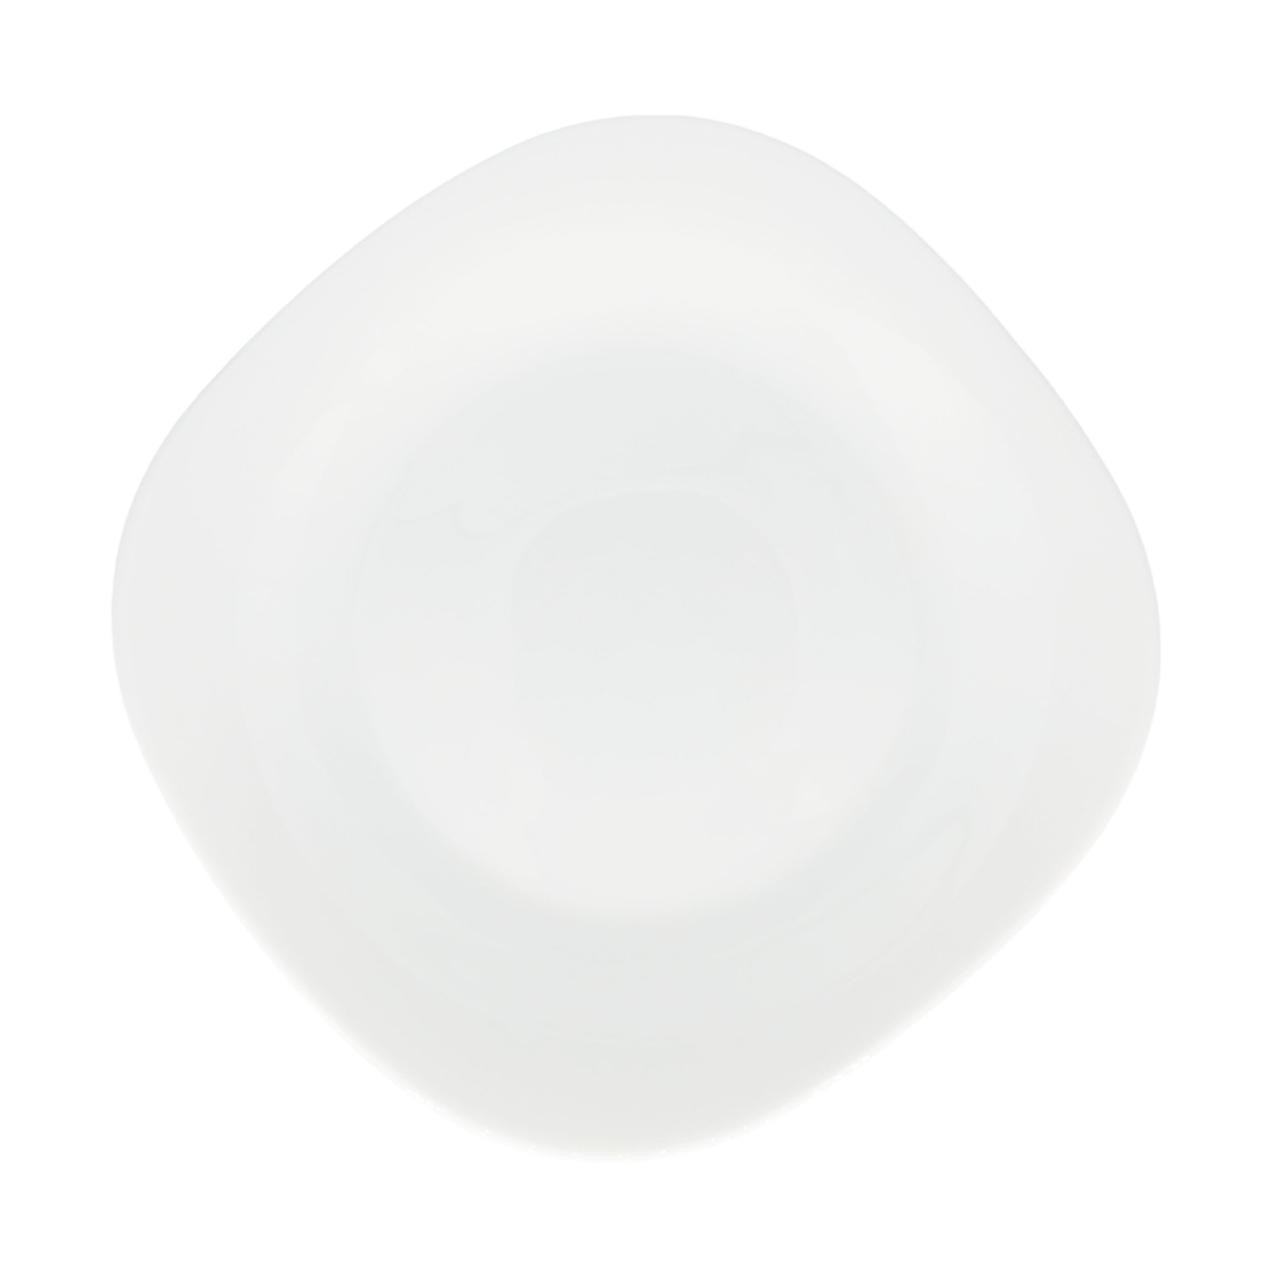 Тарелка десертная Кулинарк белая каре 20 см